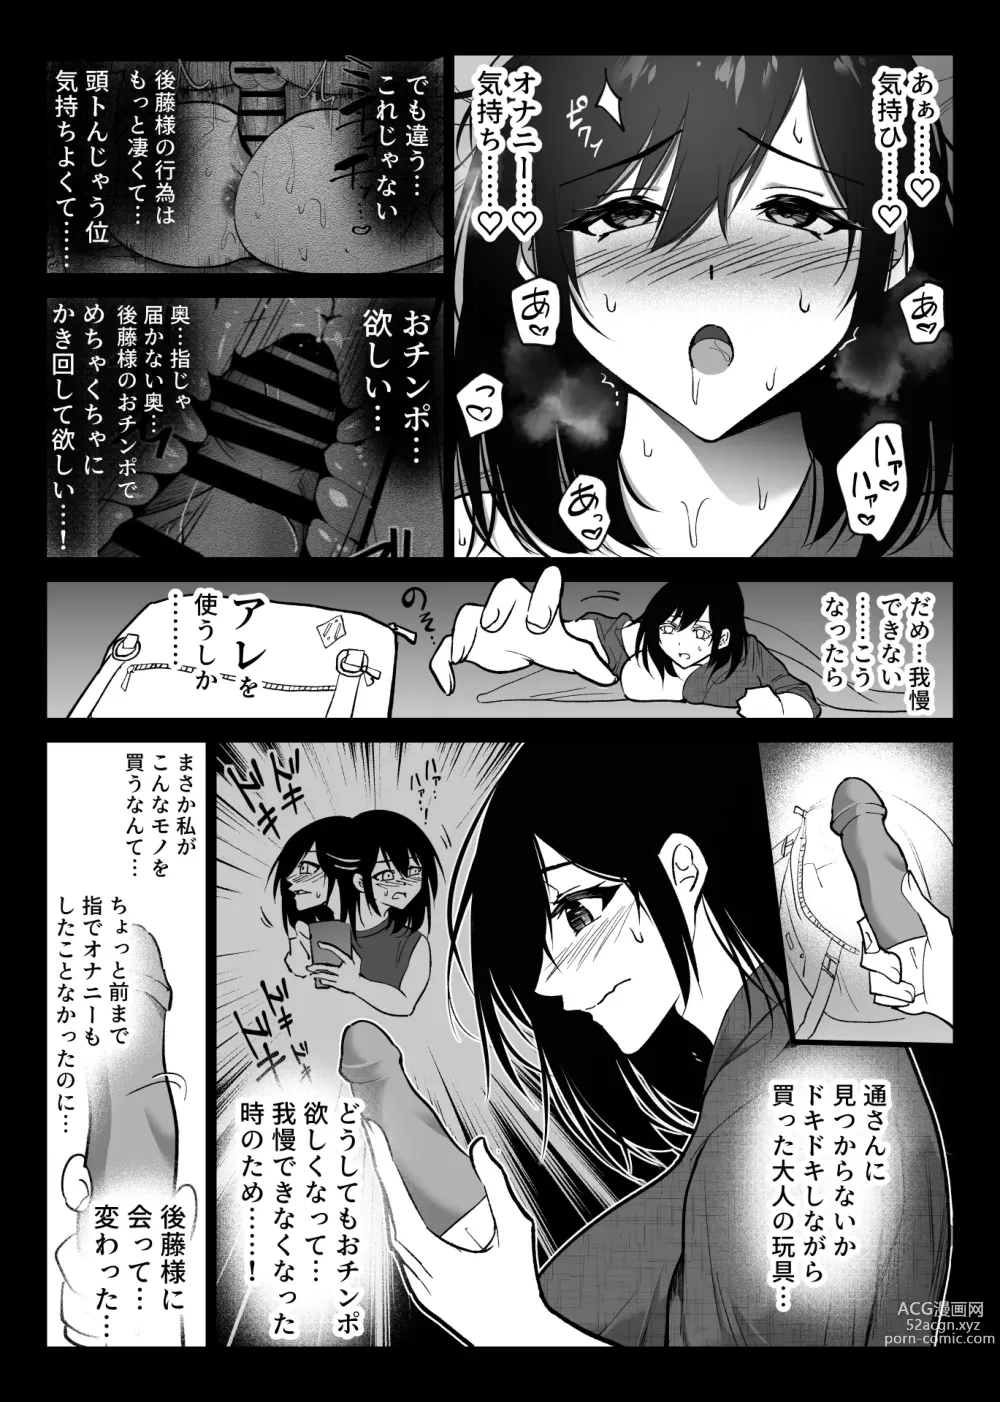 Page 9 of doujinshi Ochiru toki 3 -Ryokan no Kyakushitsu de Otto no Shuushin-Chuu Okonawareru Tanin Koubi-